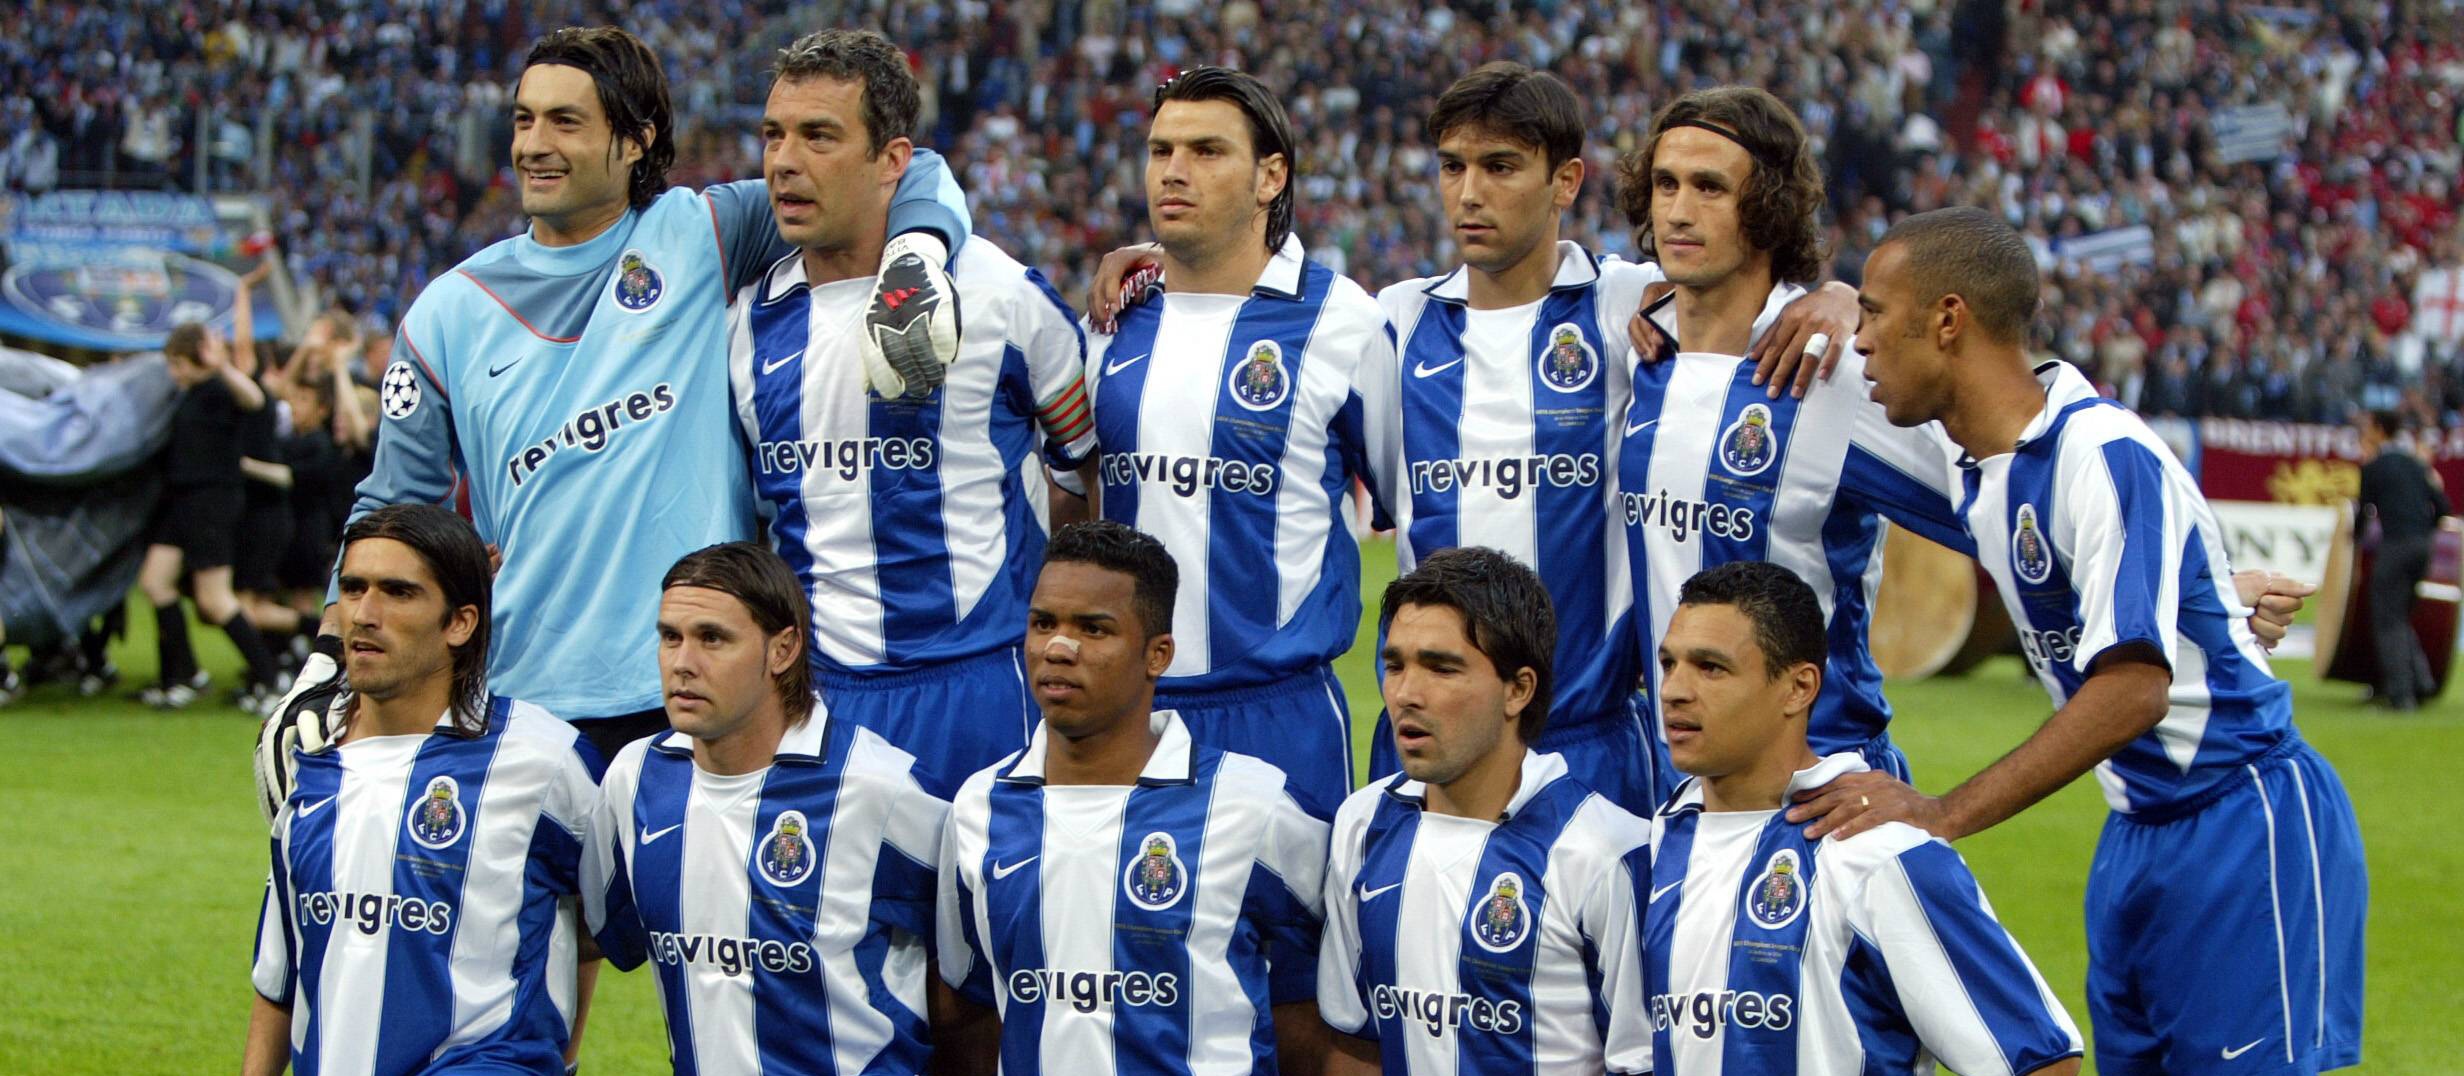 De basisopstelling van FC Porto voorafgaand aan de Champions League-finale van 2004. Deze elf spelers leverden in totaal 112 miljoen euro op.